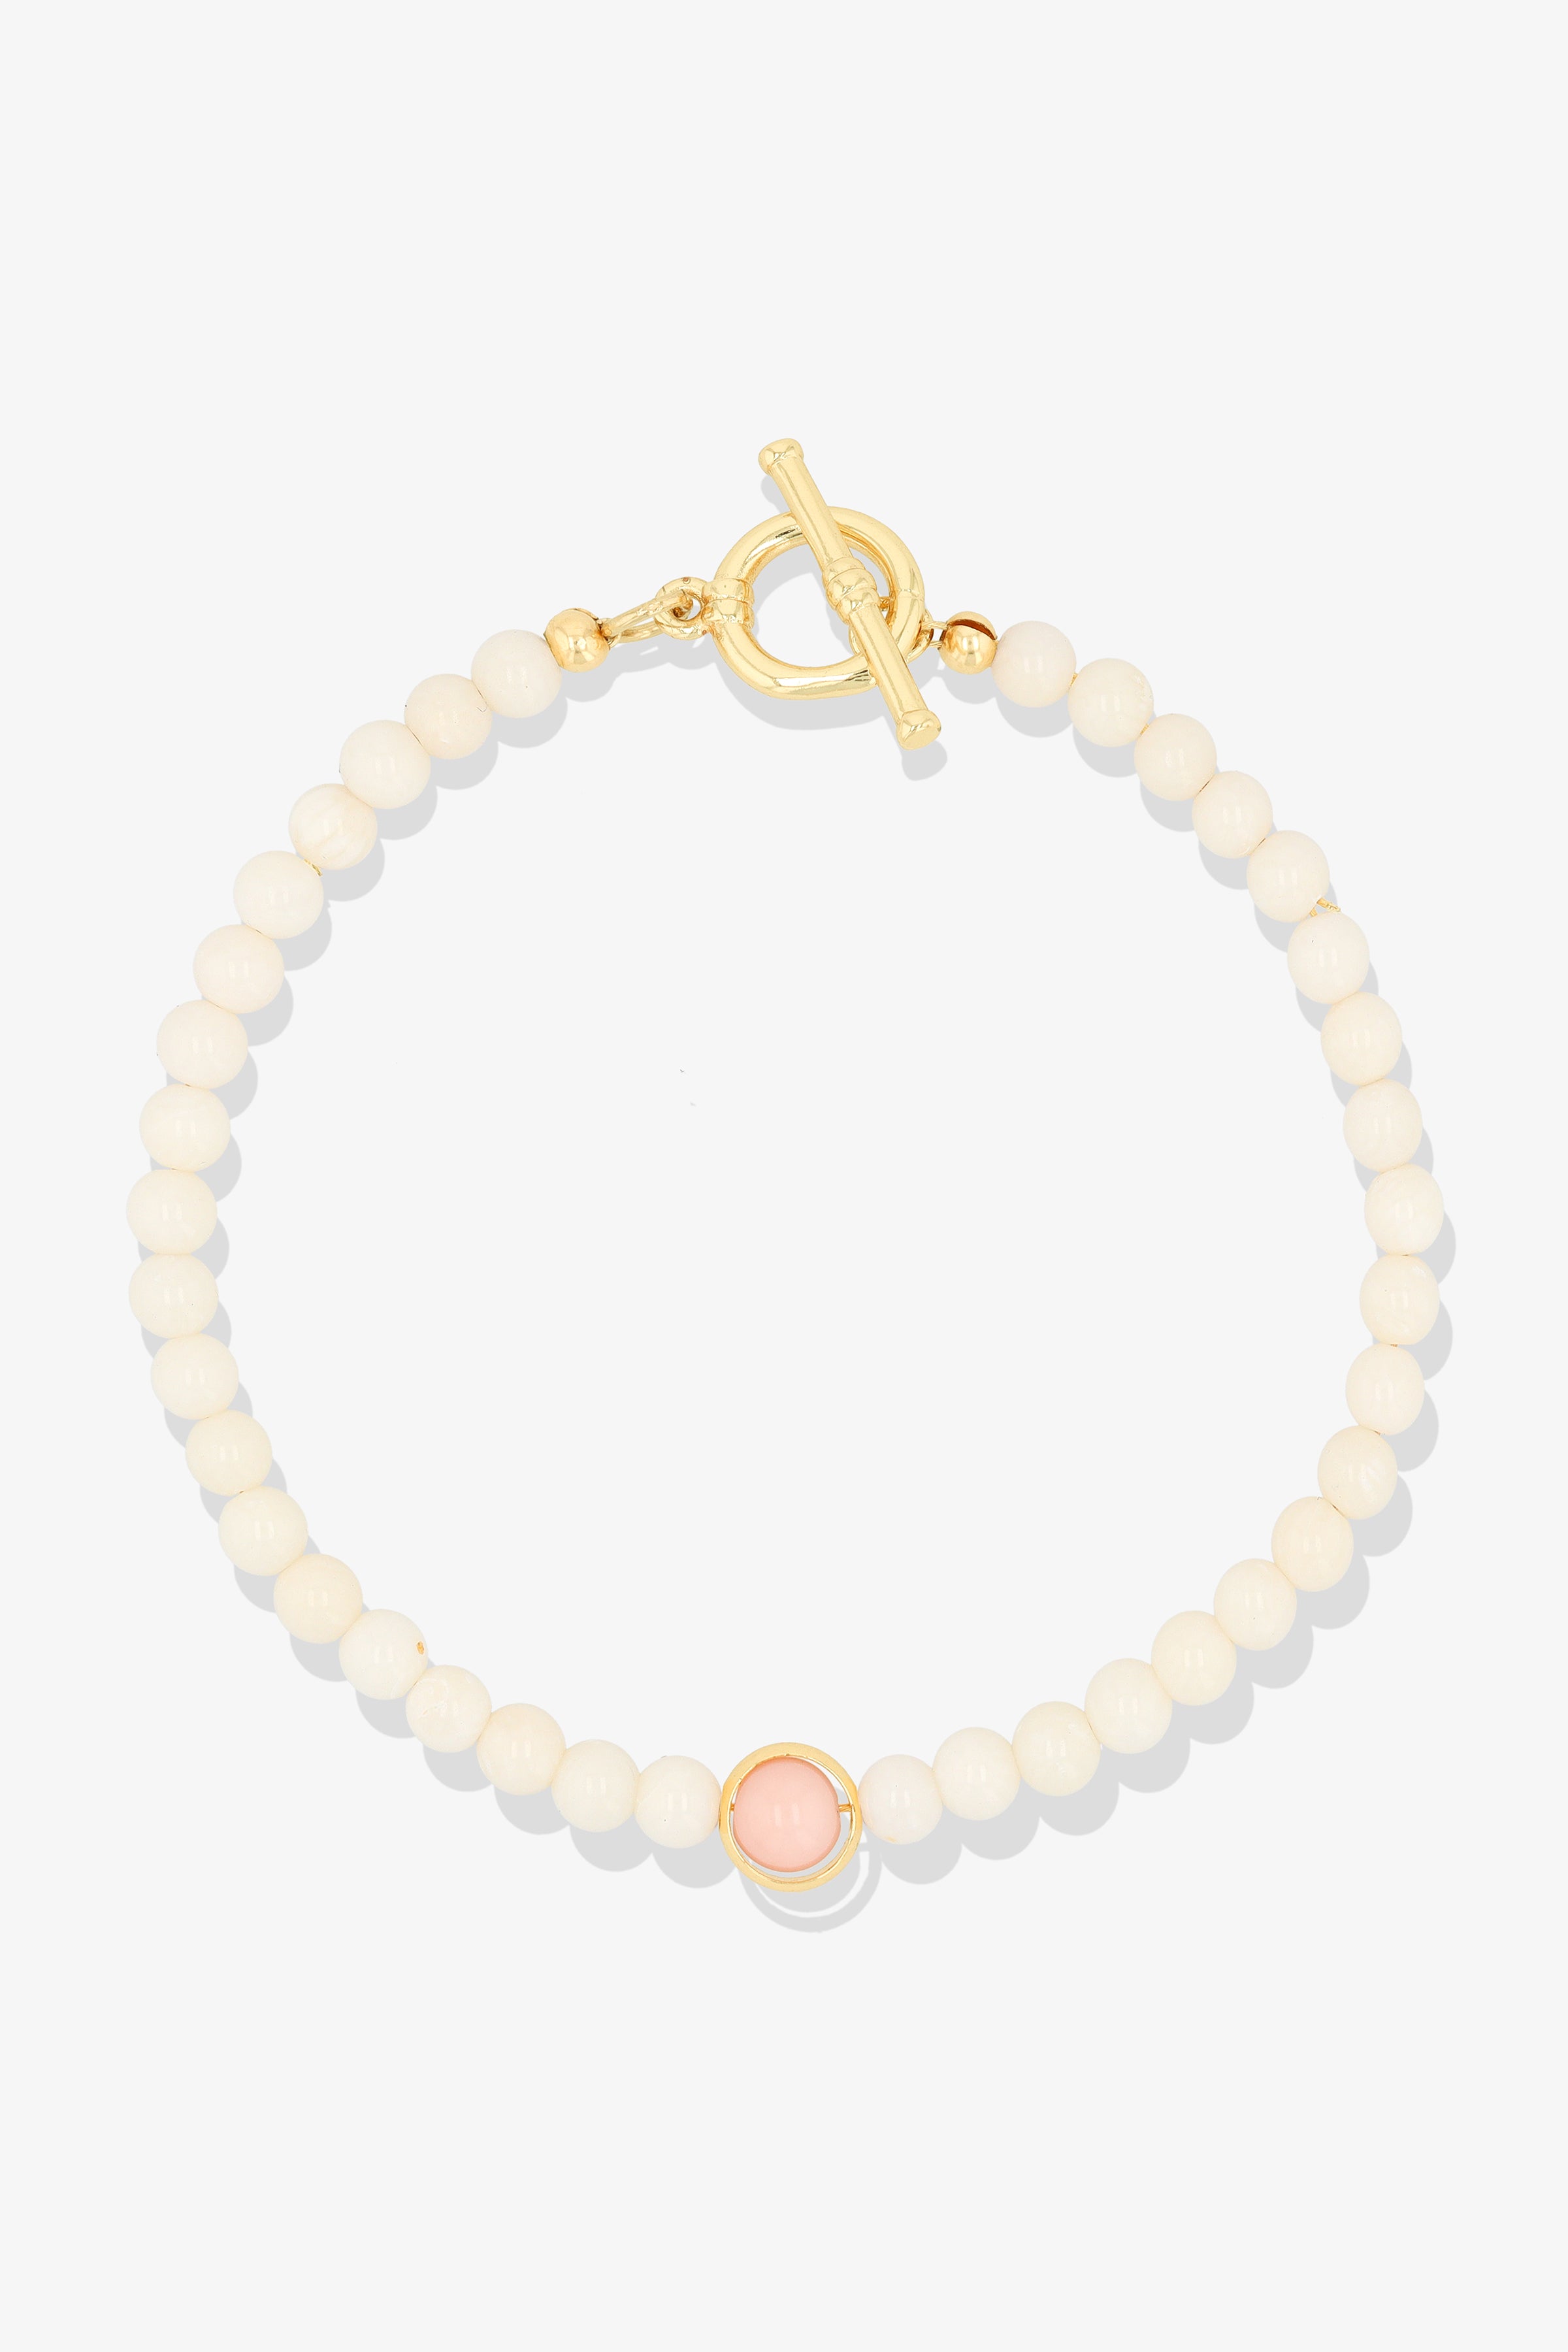 White Coral with Rose Quartz Gold Vermeil Honor Bracelet